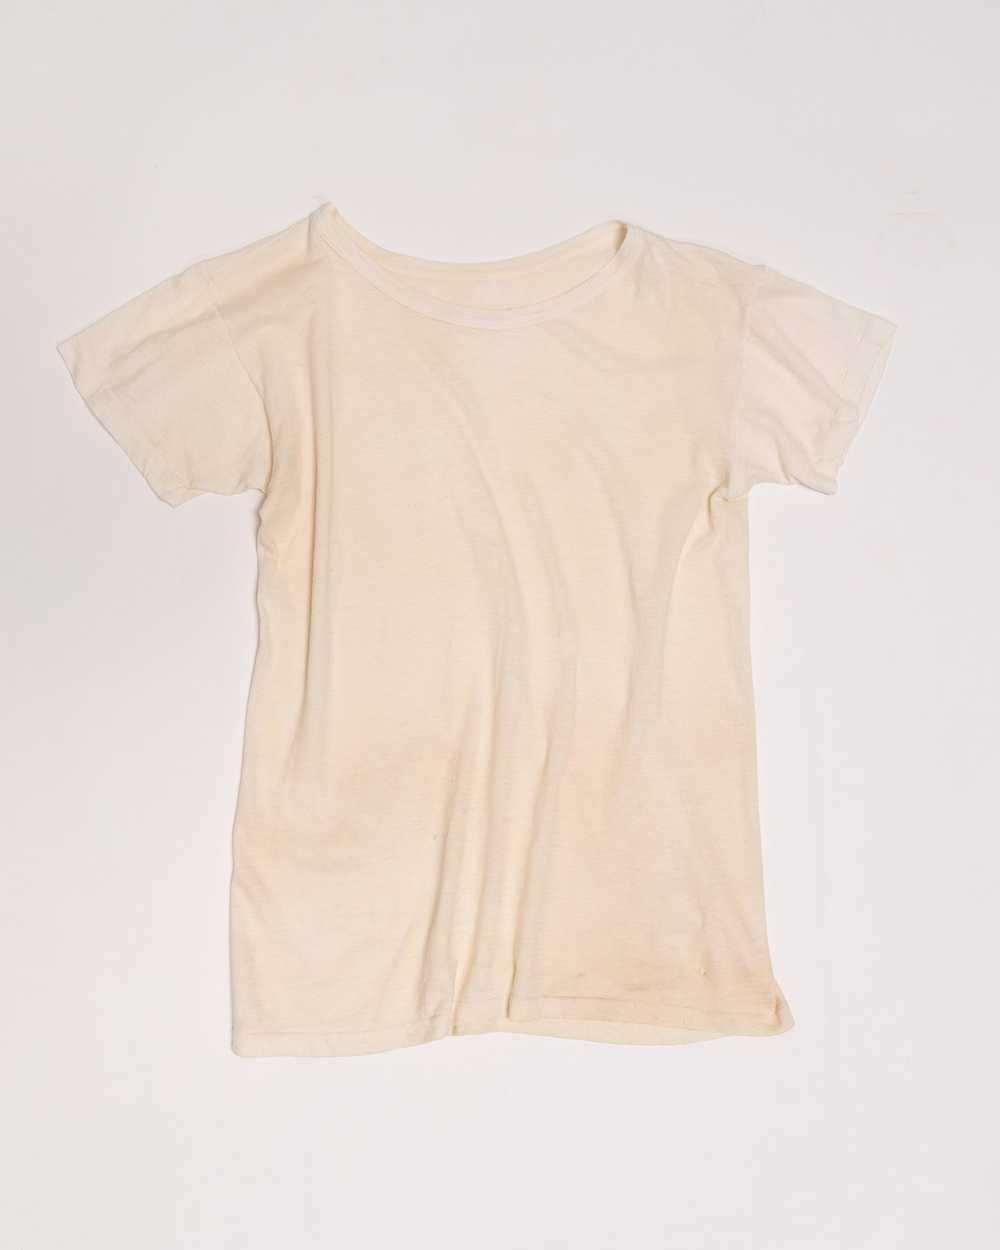 1950's Soft Cotton T-shirt - image 6